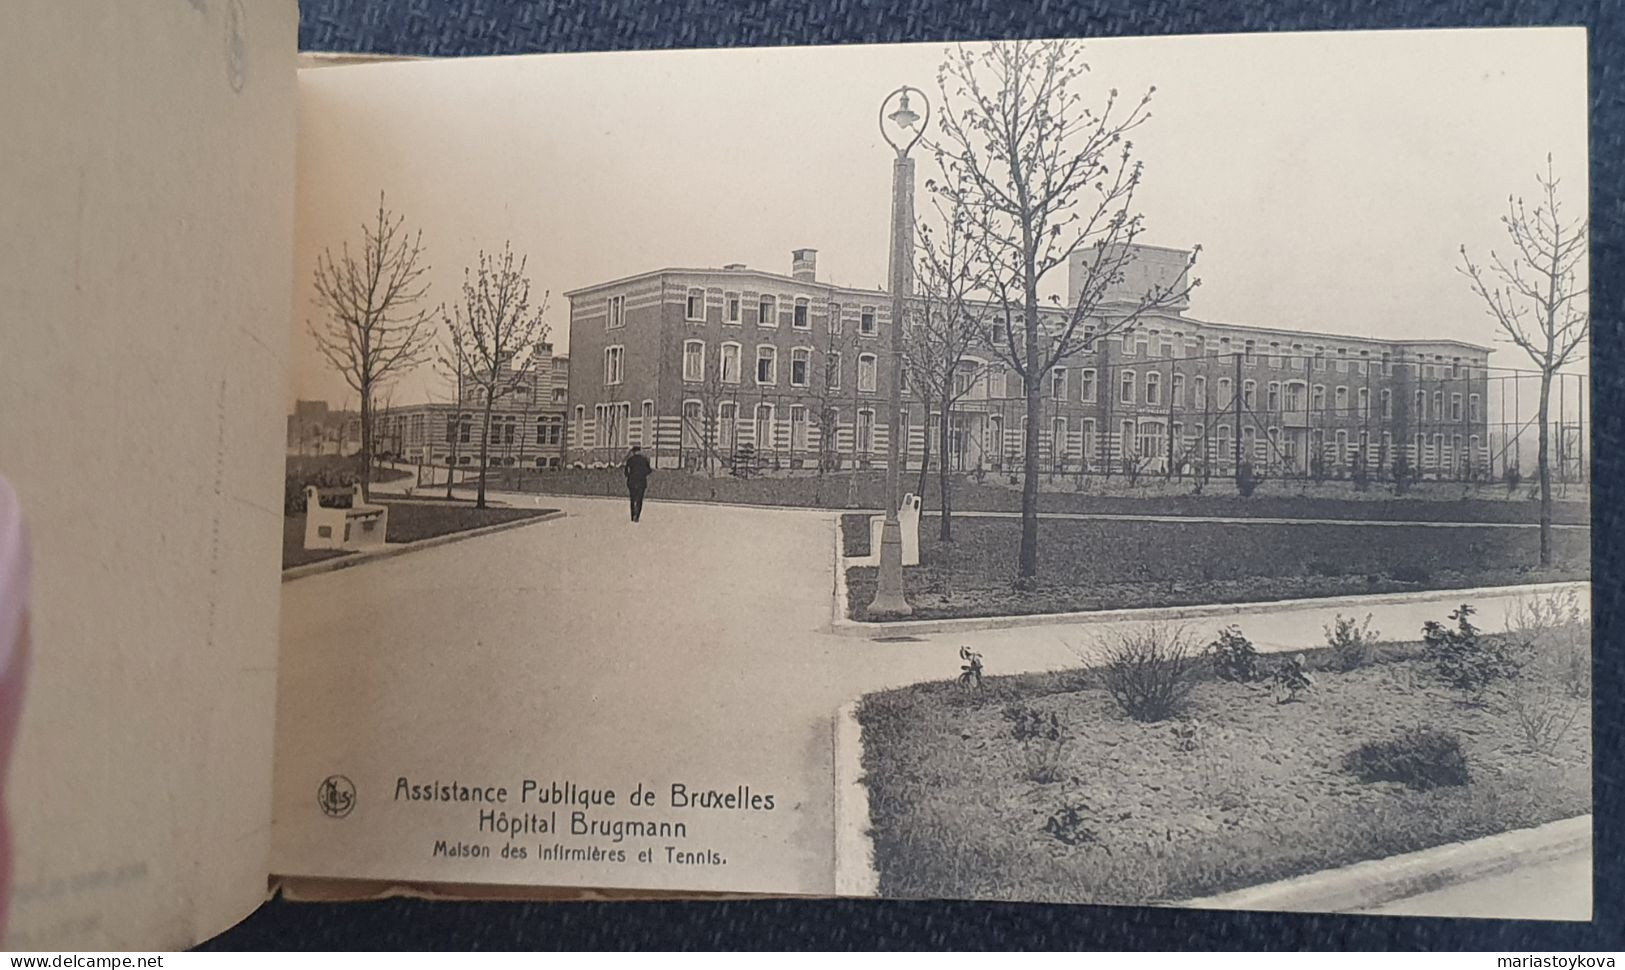 1938. Sammelheftchen mit 26 Postkarten. Assistance Publique de Bruxelles. Hopital Brugmann.